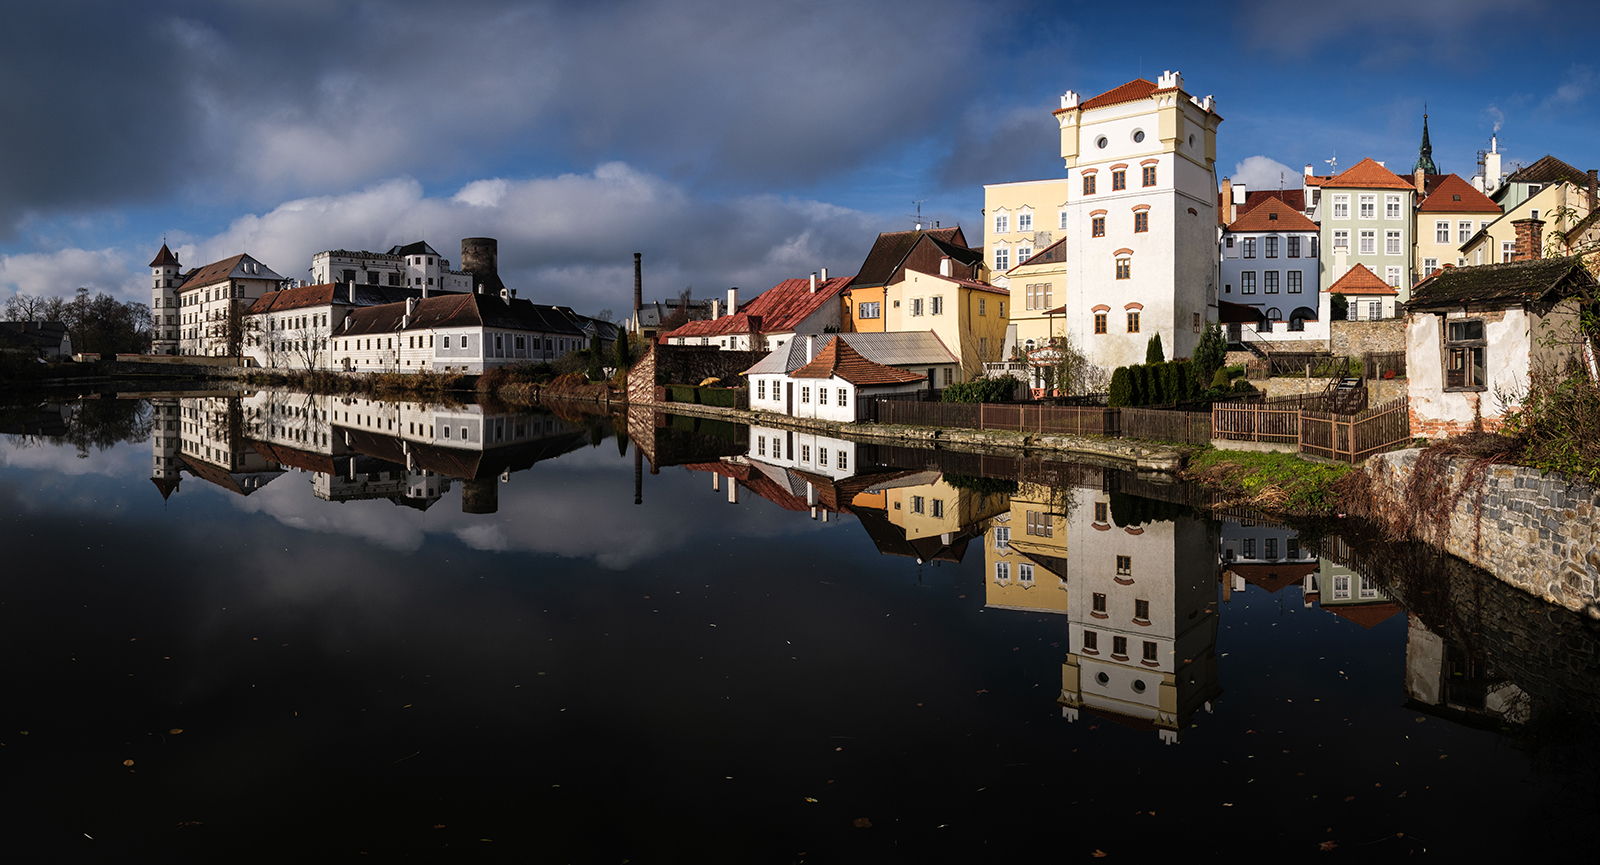 DOMINIK VERINGER - Jindřichohradecké zámecké panorama s odrazem na hladině